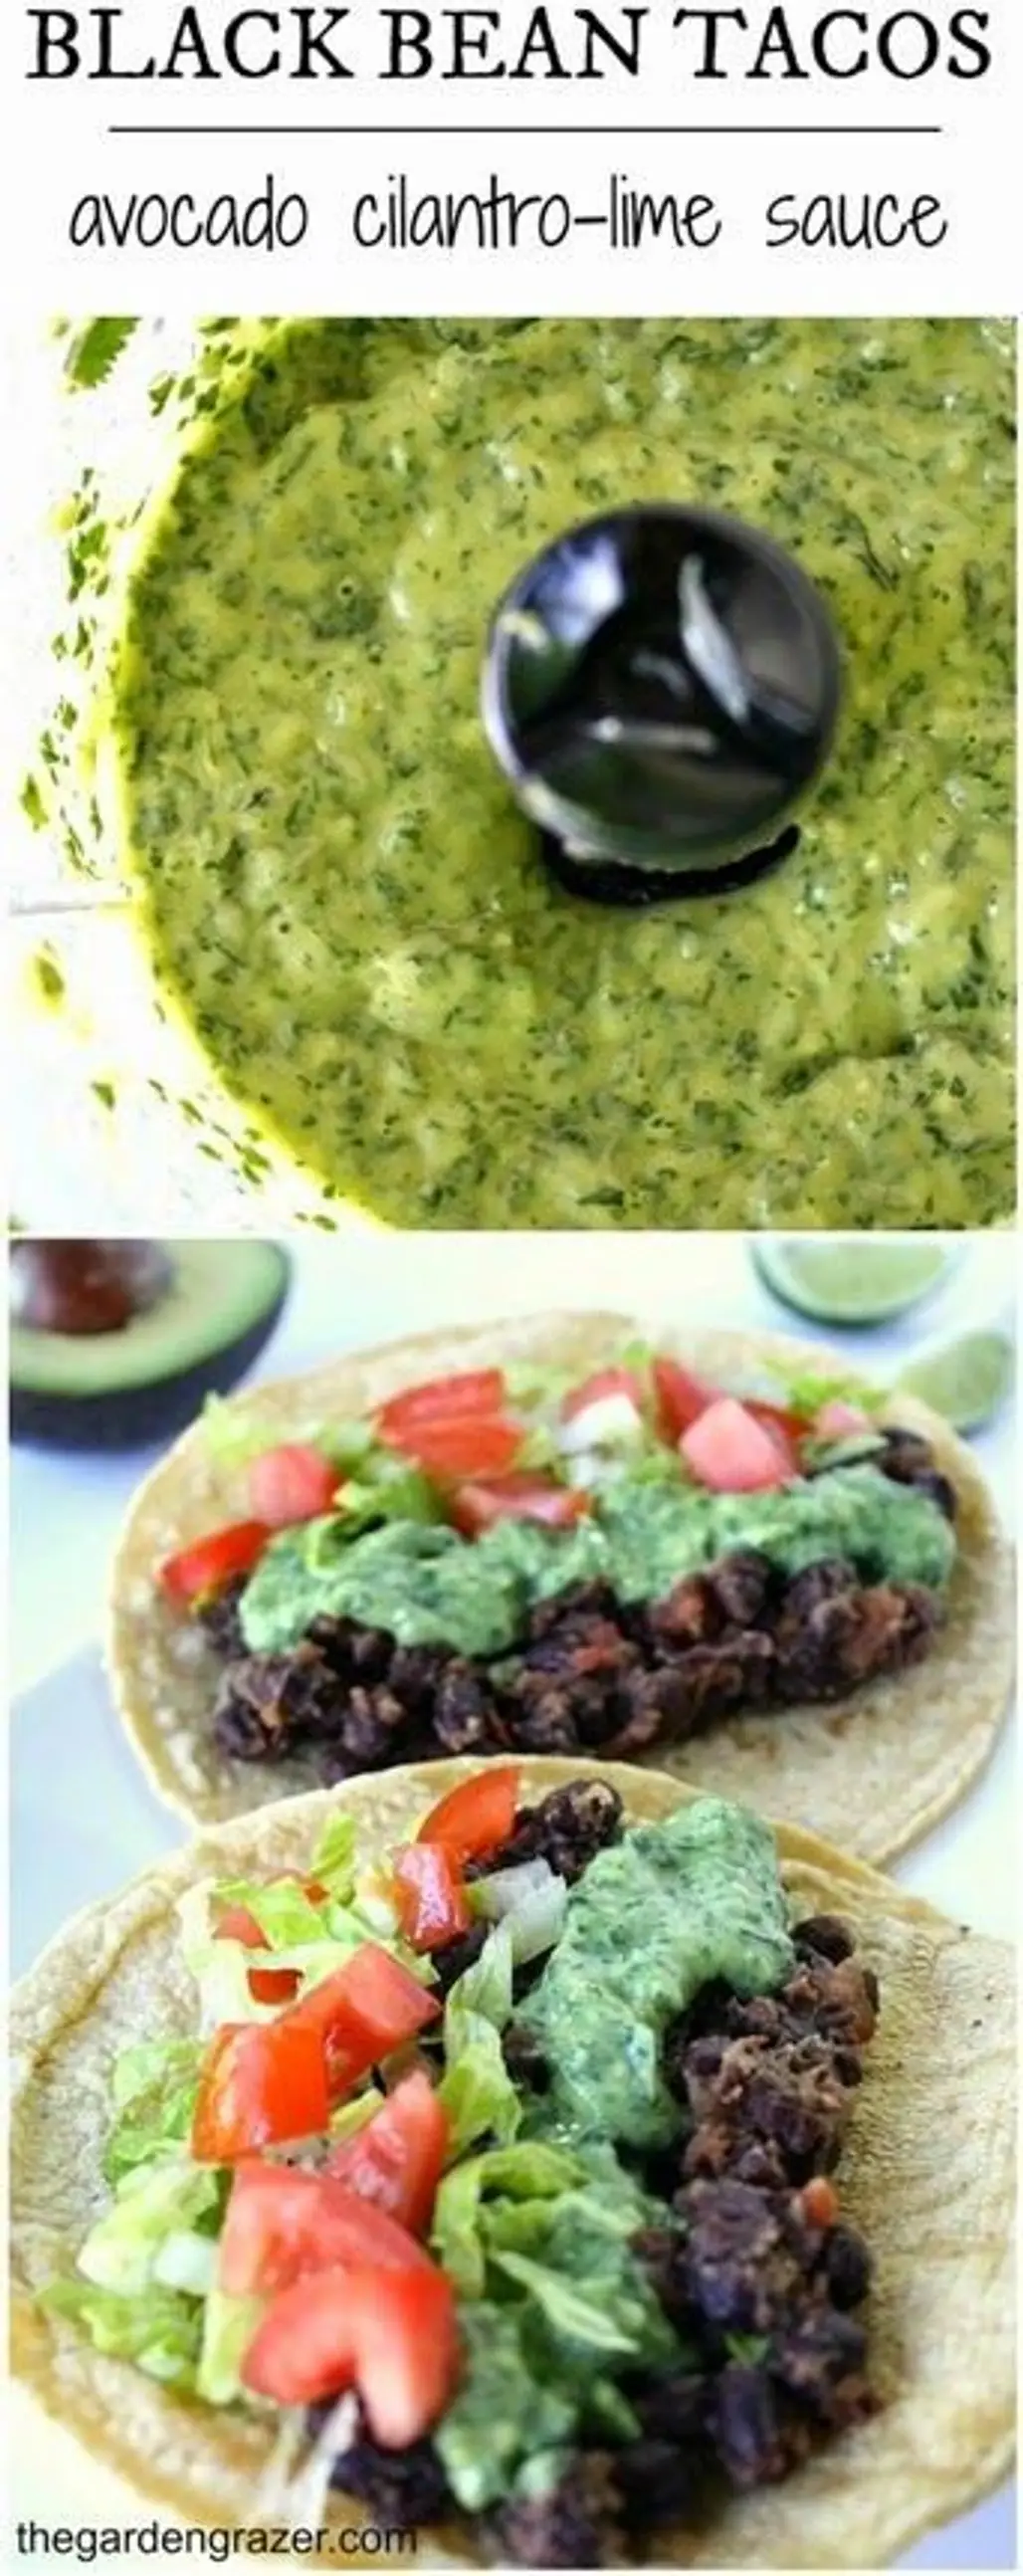 Black Bean Tacos with Avocado Cilantro-lime Sauce